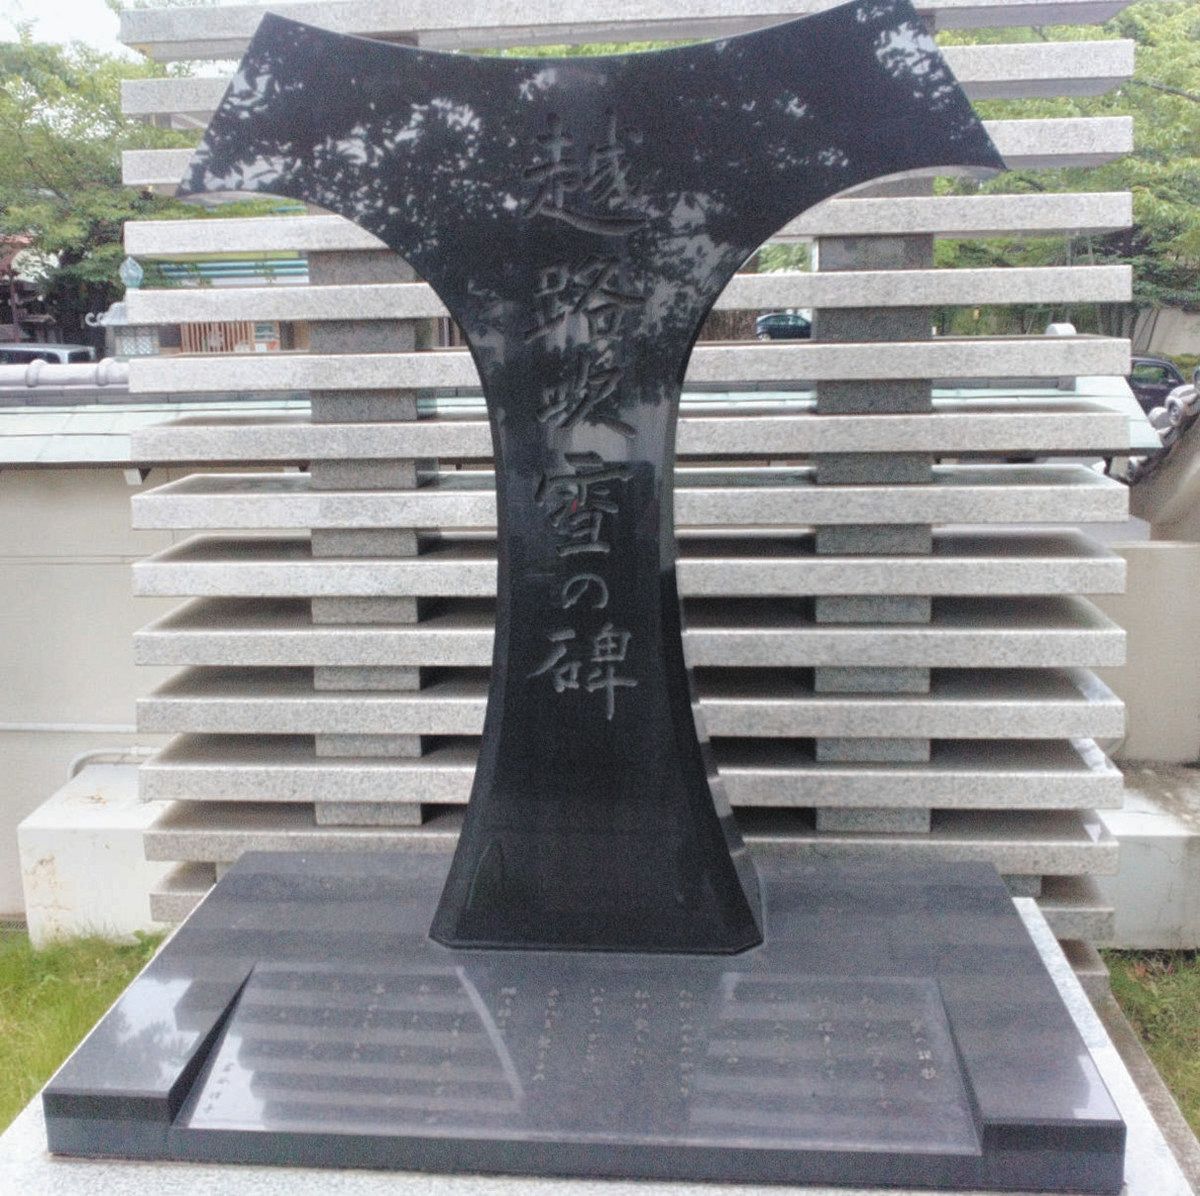 元麻布の寺院にある越路吹雪さんの記念碑。岩谷時子さん訳詞の「愛の讃歌」が刻まれている
